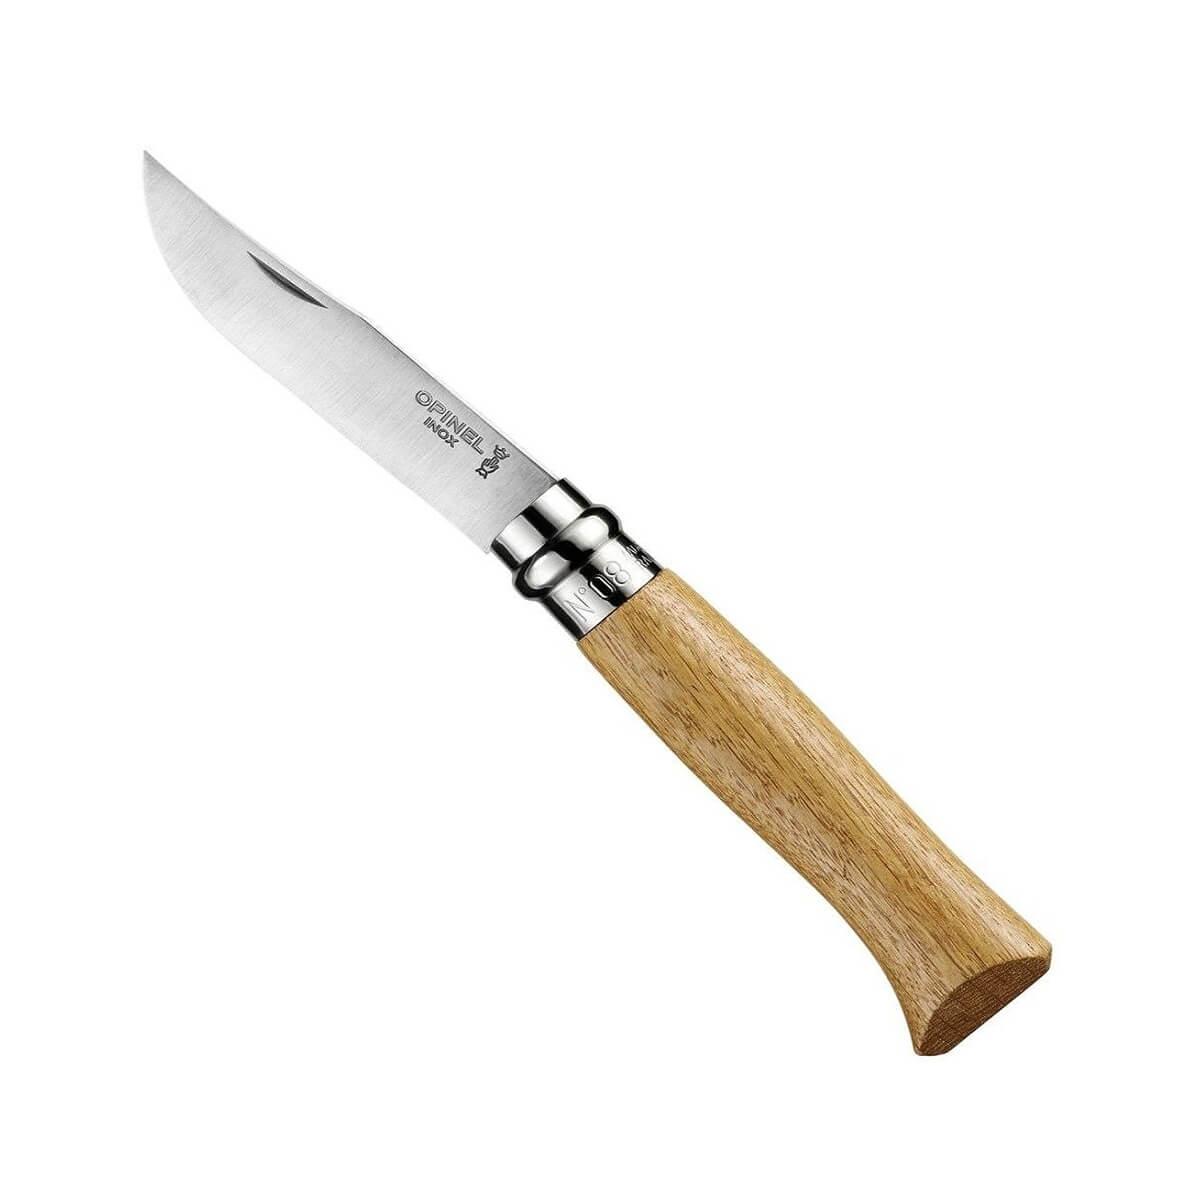  No.08 Oak Stainless Steel Pocket Knife